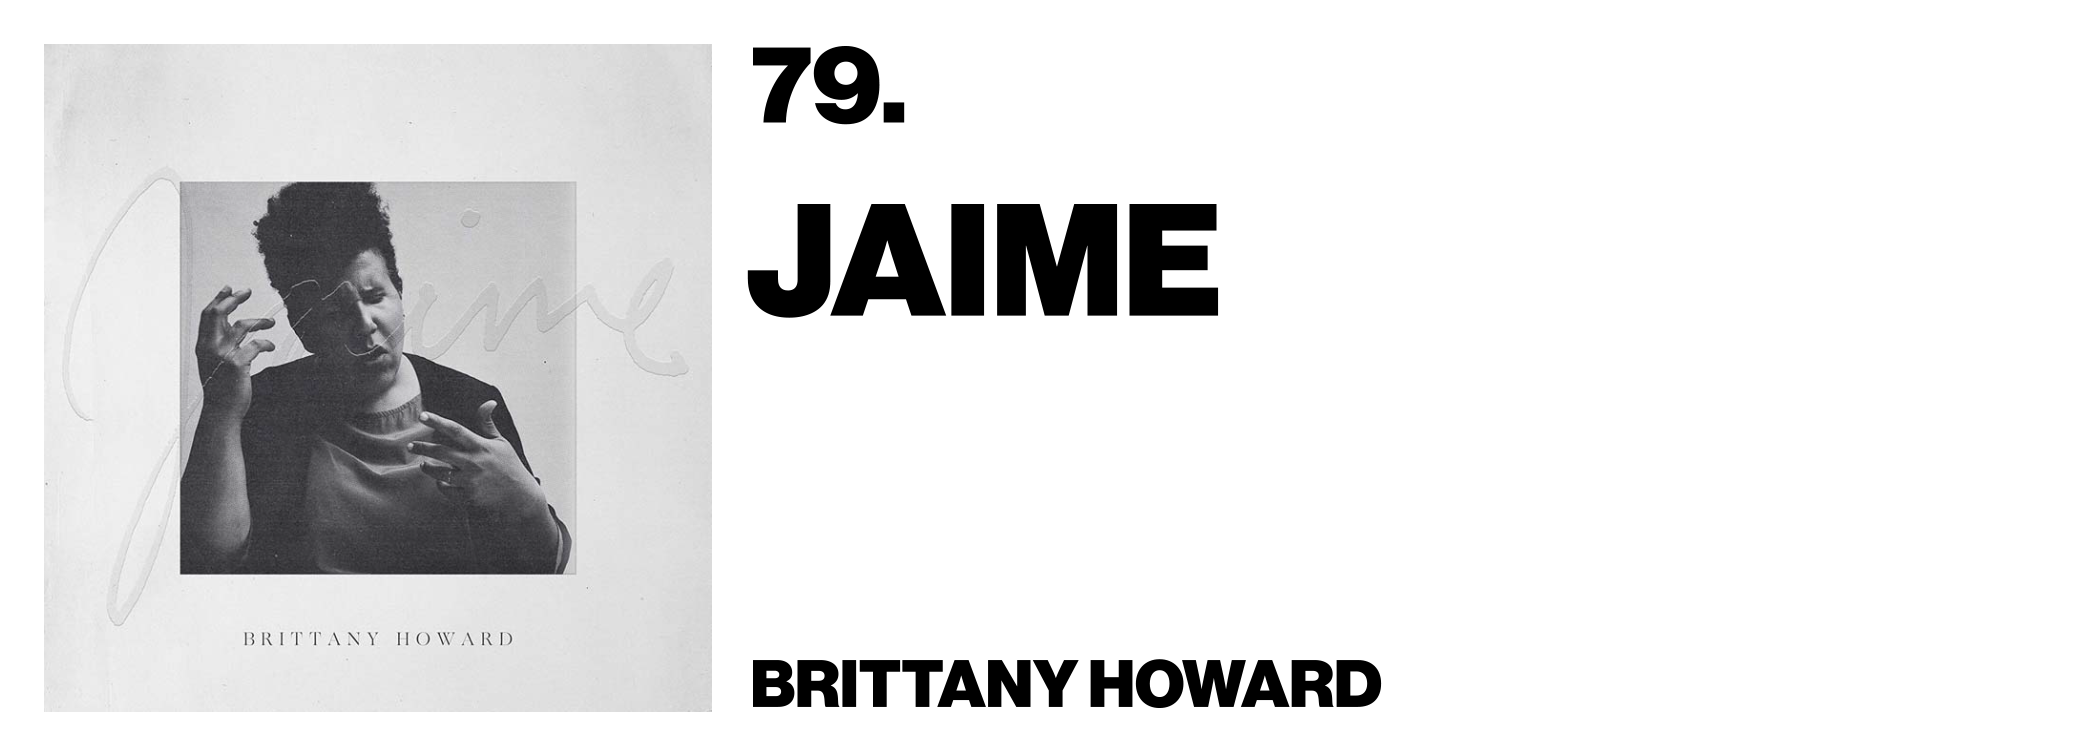 1575921592991-79-Brittany-Howard-Jaime